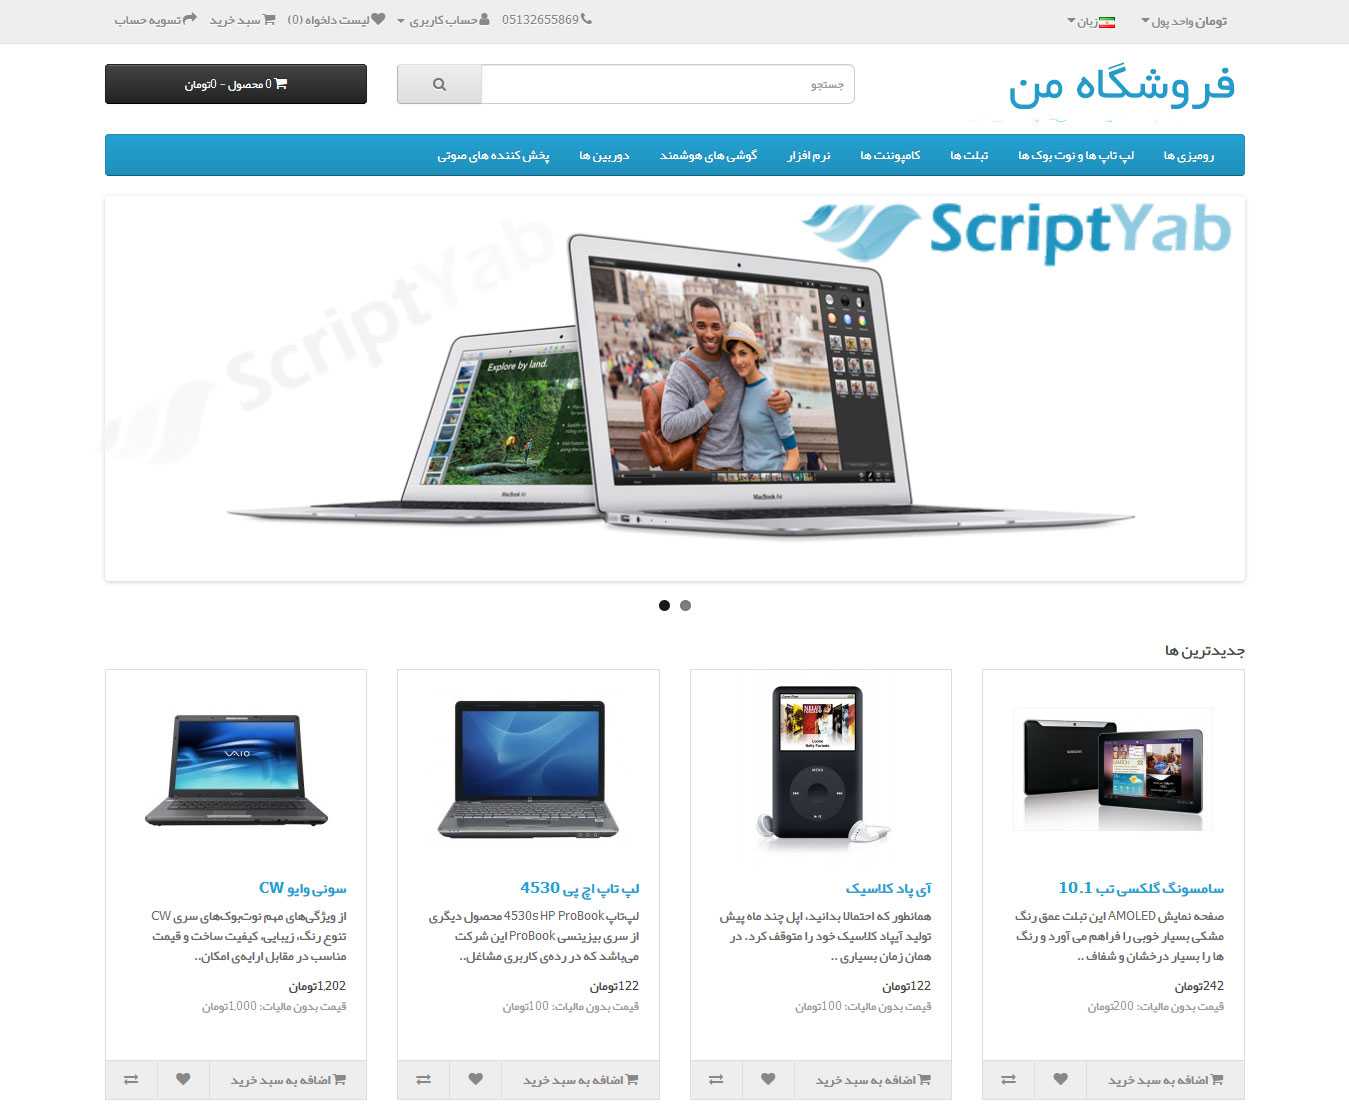 دانلود اسکریپت فروشگاه ساز OpenCart 3.0.3.2 فارسی